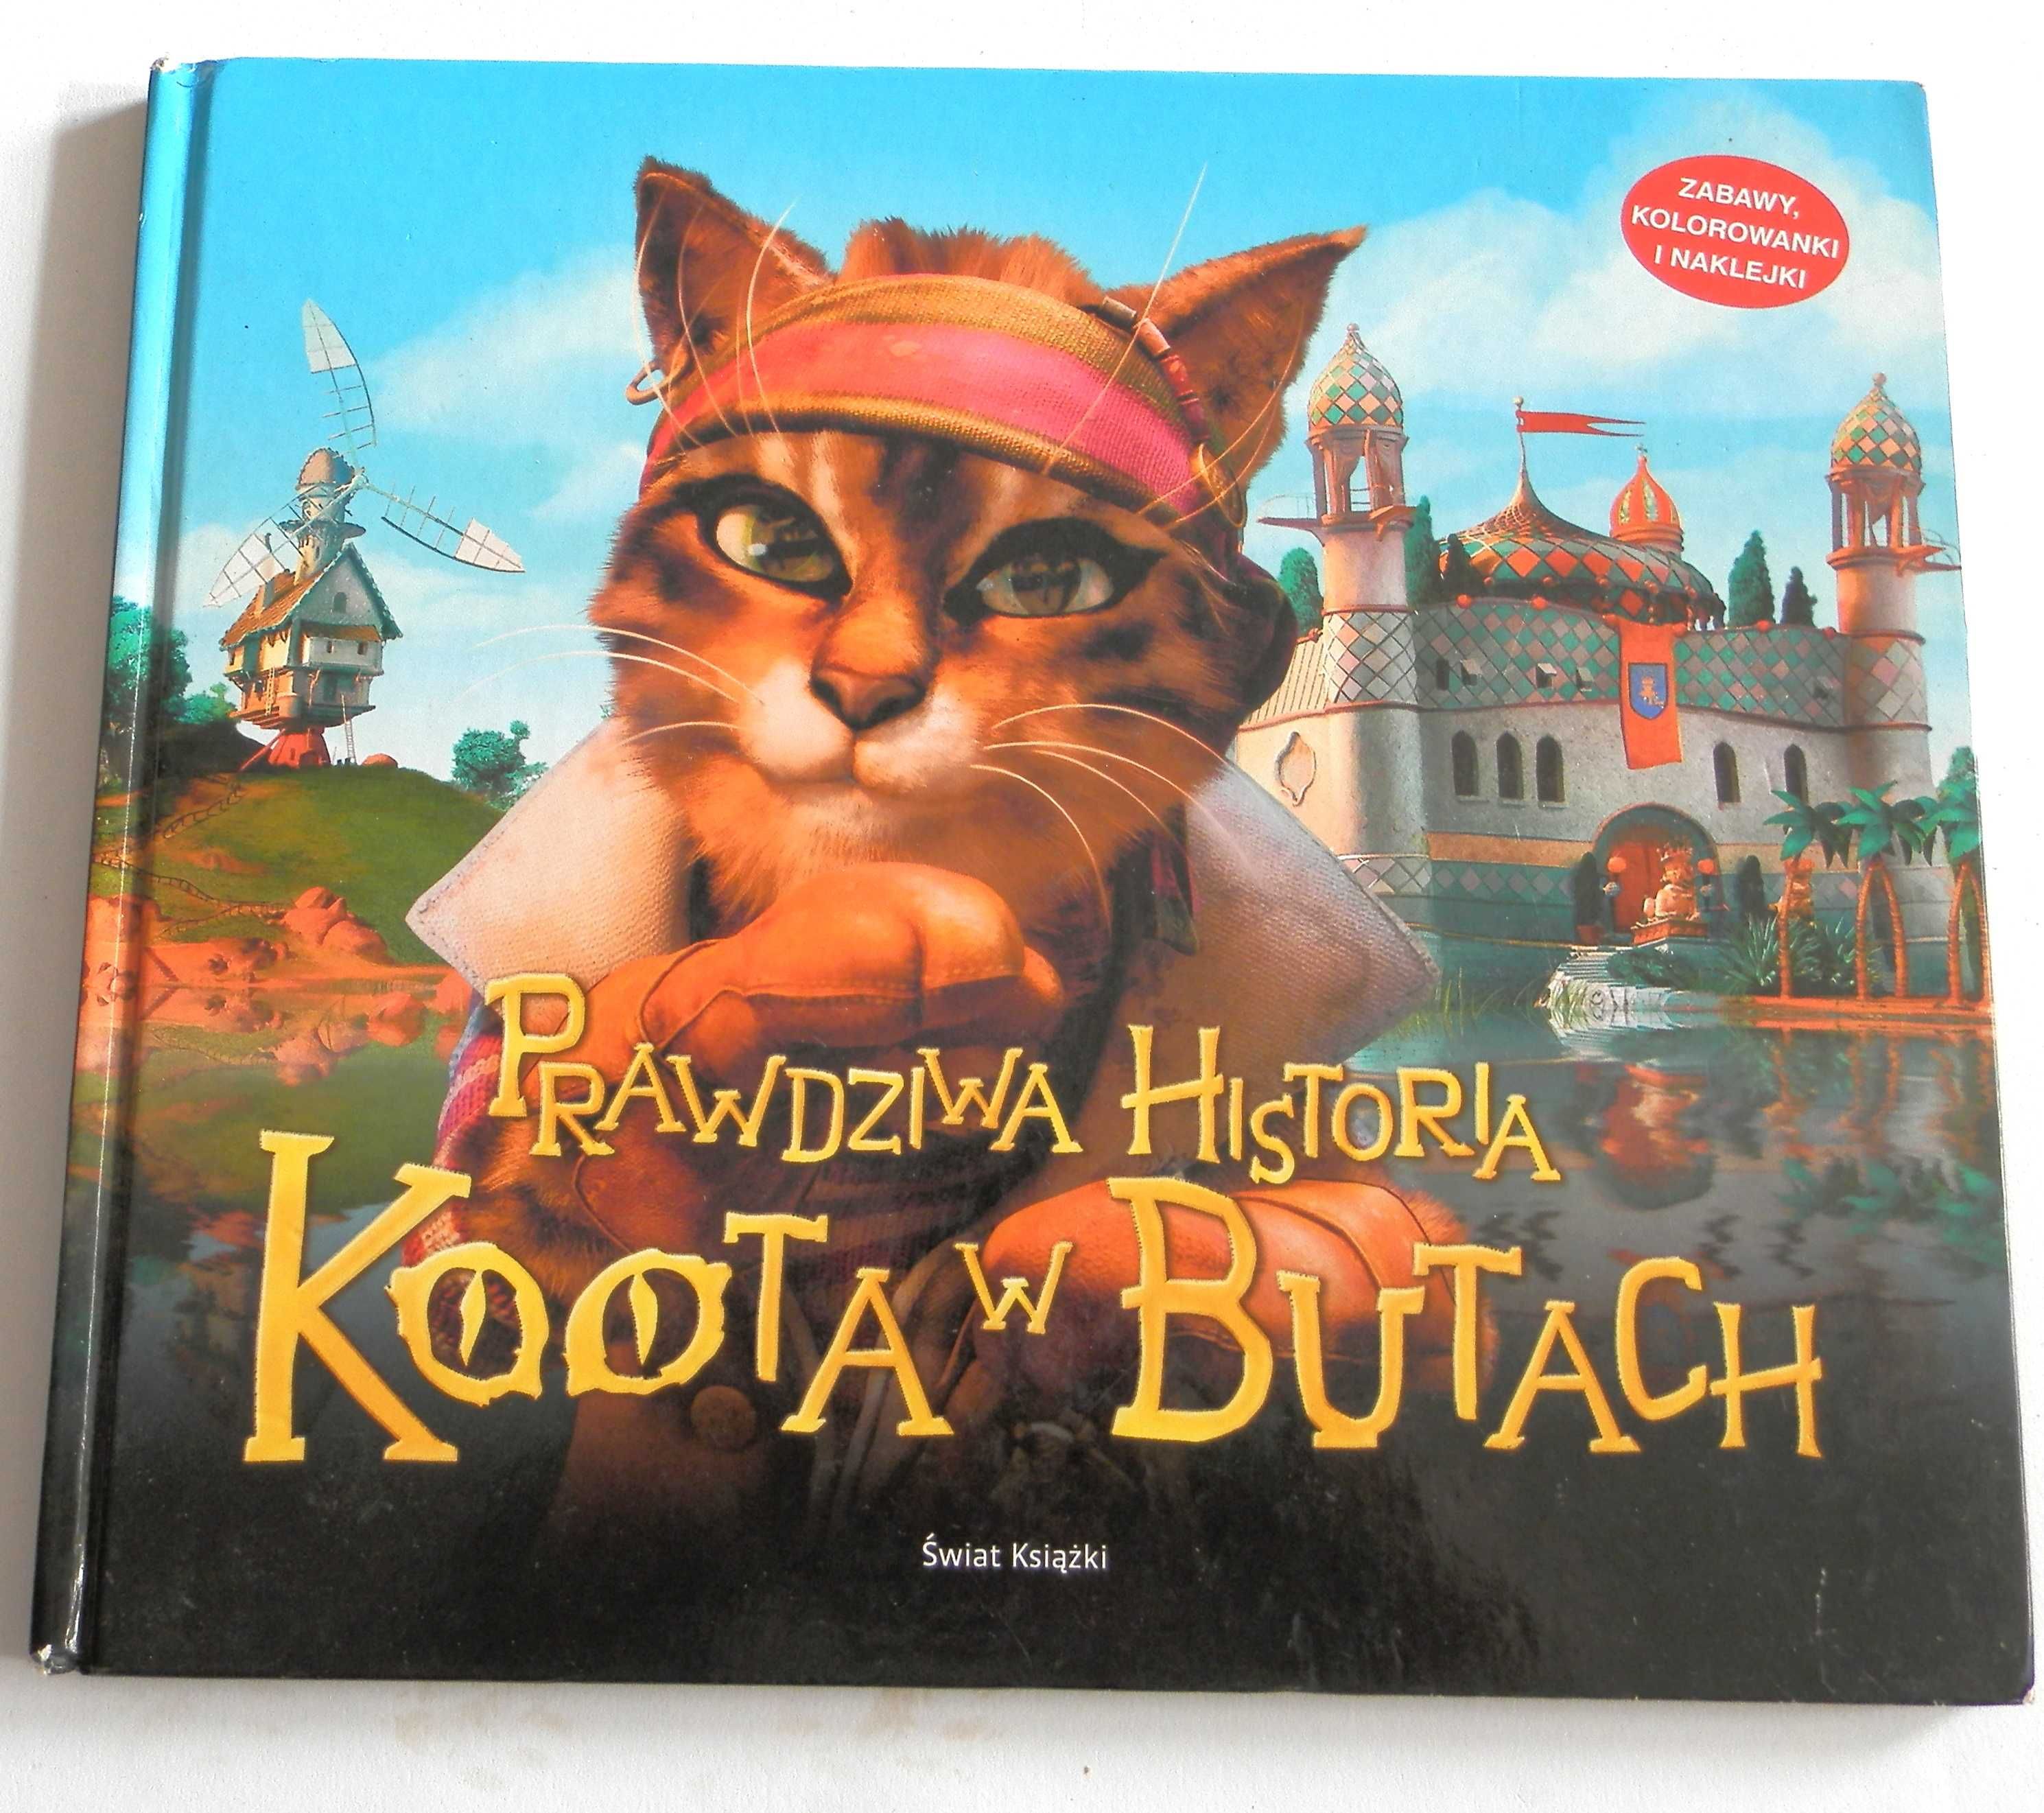 Prawdziwa Historia kota w butach książka dla dziecka 6+ŚWIAT KSIĄŻKI